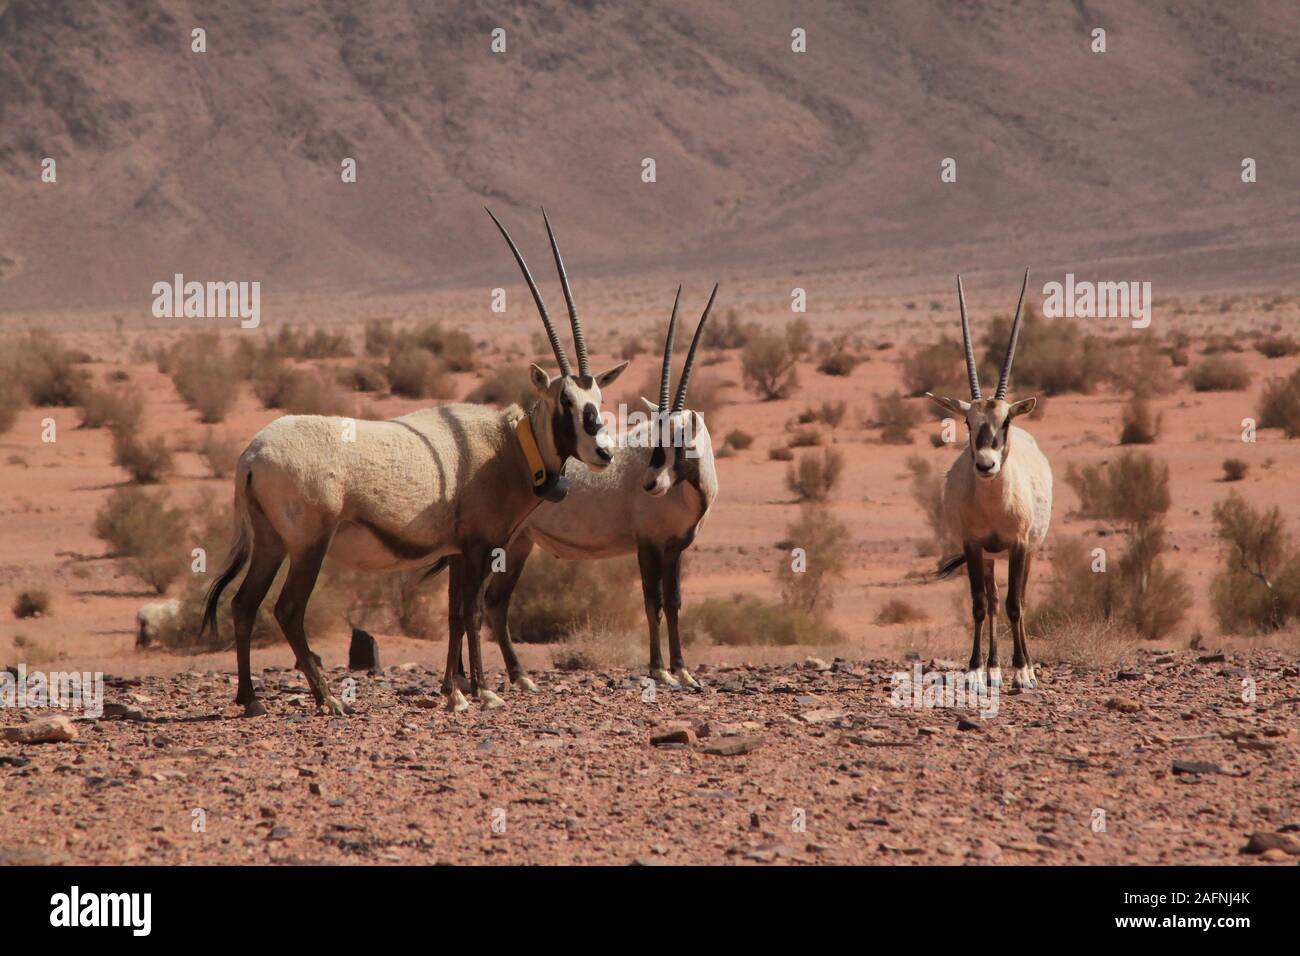 Arabische Oryx (Oryx leucoryx) Im geschützten Bereich im Wadi Rum. Die Weiße Oryx wurde in der Wildnis ausgestorben seit 1972. Die wiedereinführung Projekt für Jordanien begann, als die Environment Agency Abu Dhabi (EAD) und die Al Aqaba Special Economic Zone Authority eine Sponsorenvereinbarung im April 2007 unterzeichnet. Im Rahmen dieser Vereinbarung, EAD fördert das Projekt mit der Wiedereinführung der arabischen Oryx in das Wadi Rum geschützten Bereich, bei der Sanierung der Lebensraum und helfen, den lokalen Bewohnern, ihren Lebensstandard zu verbessern. Der Roten Liste der IUCN stuft noch die Arten als gefährdet. Stockfoto